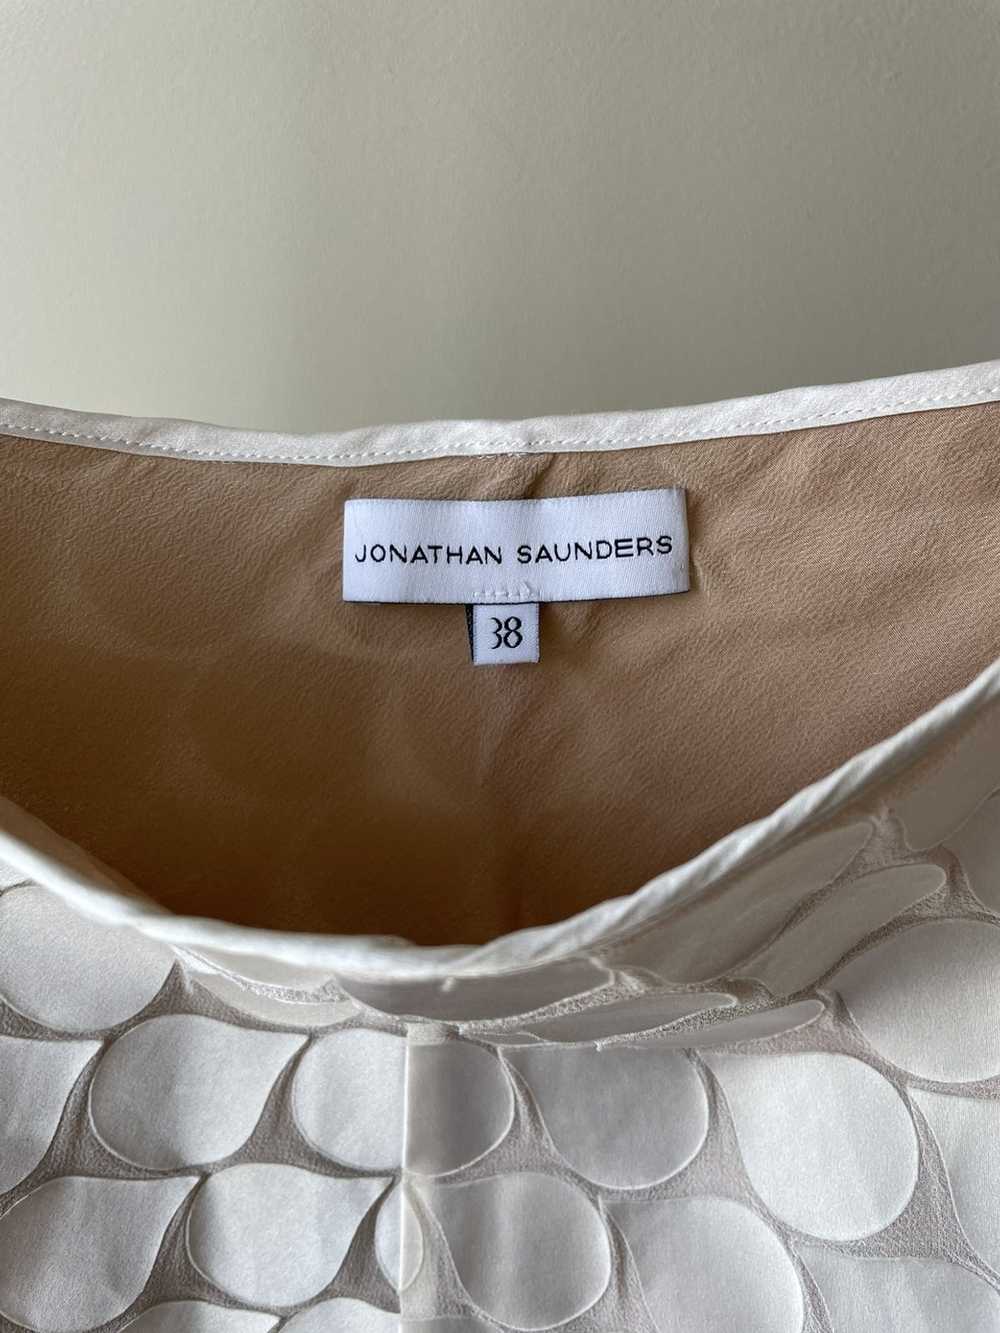 Jonathan Saunders Jonathan Saunders silk skirt - image 4